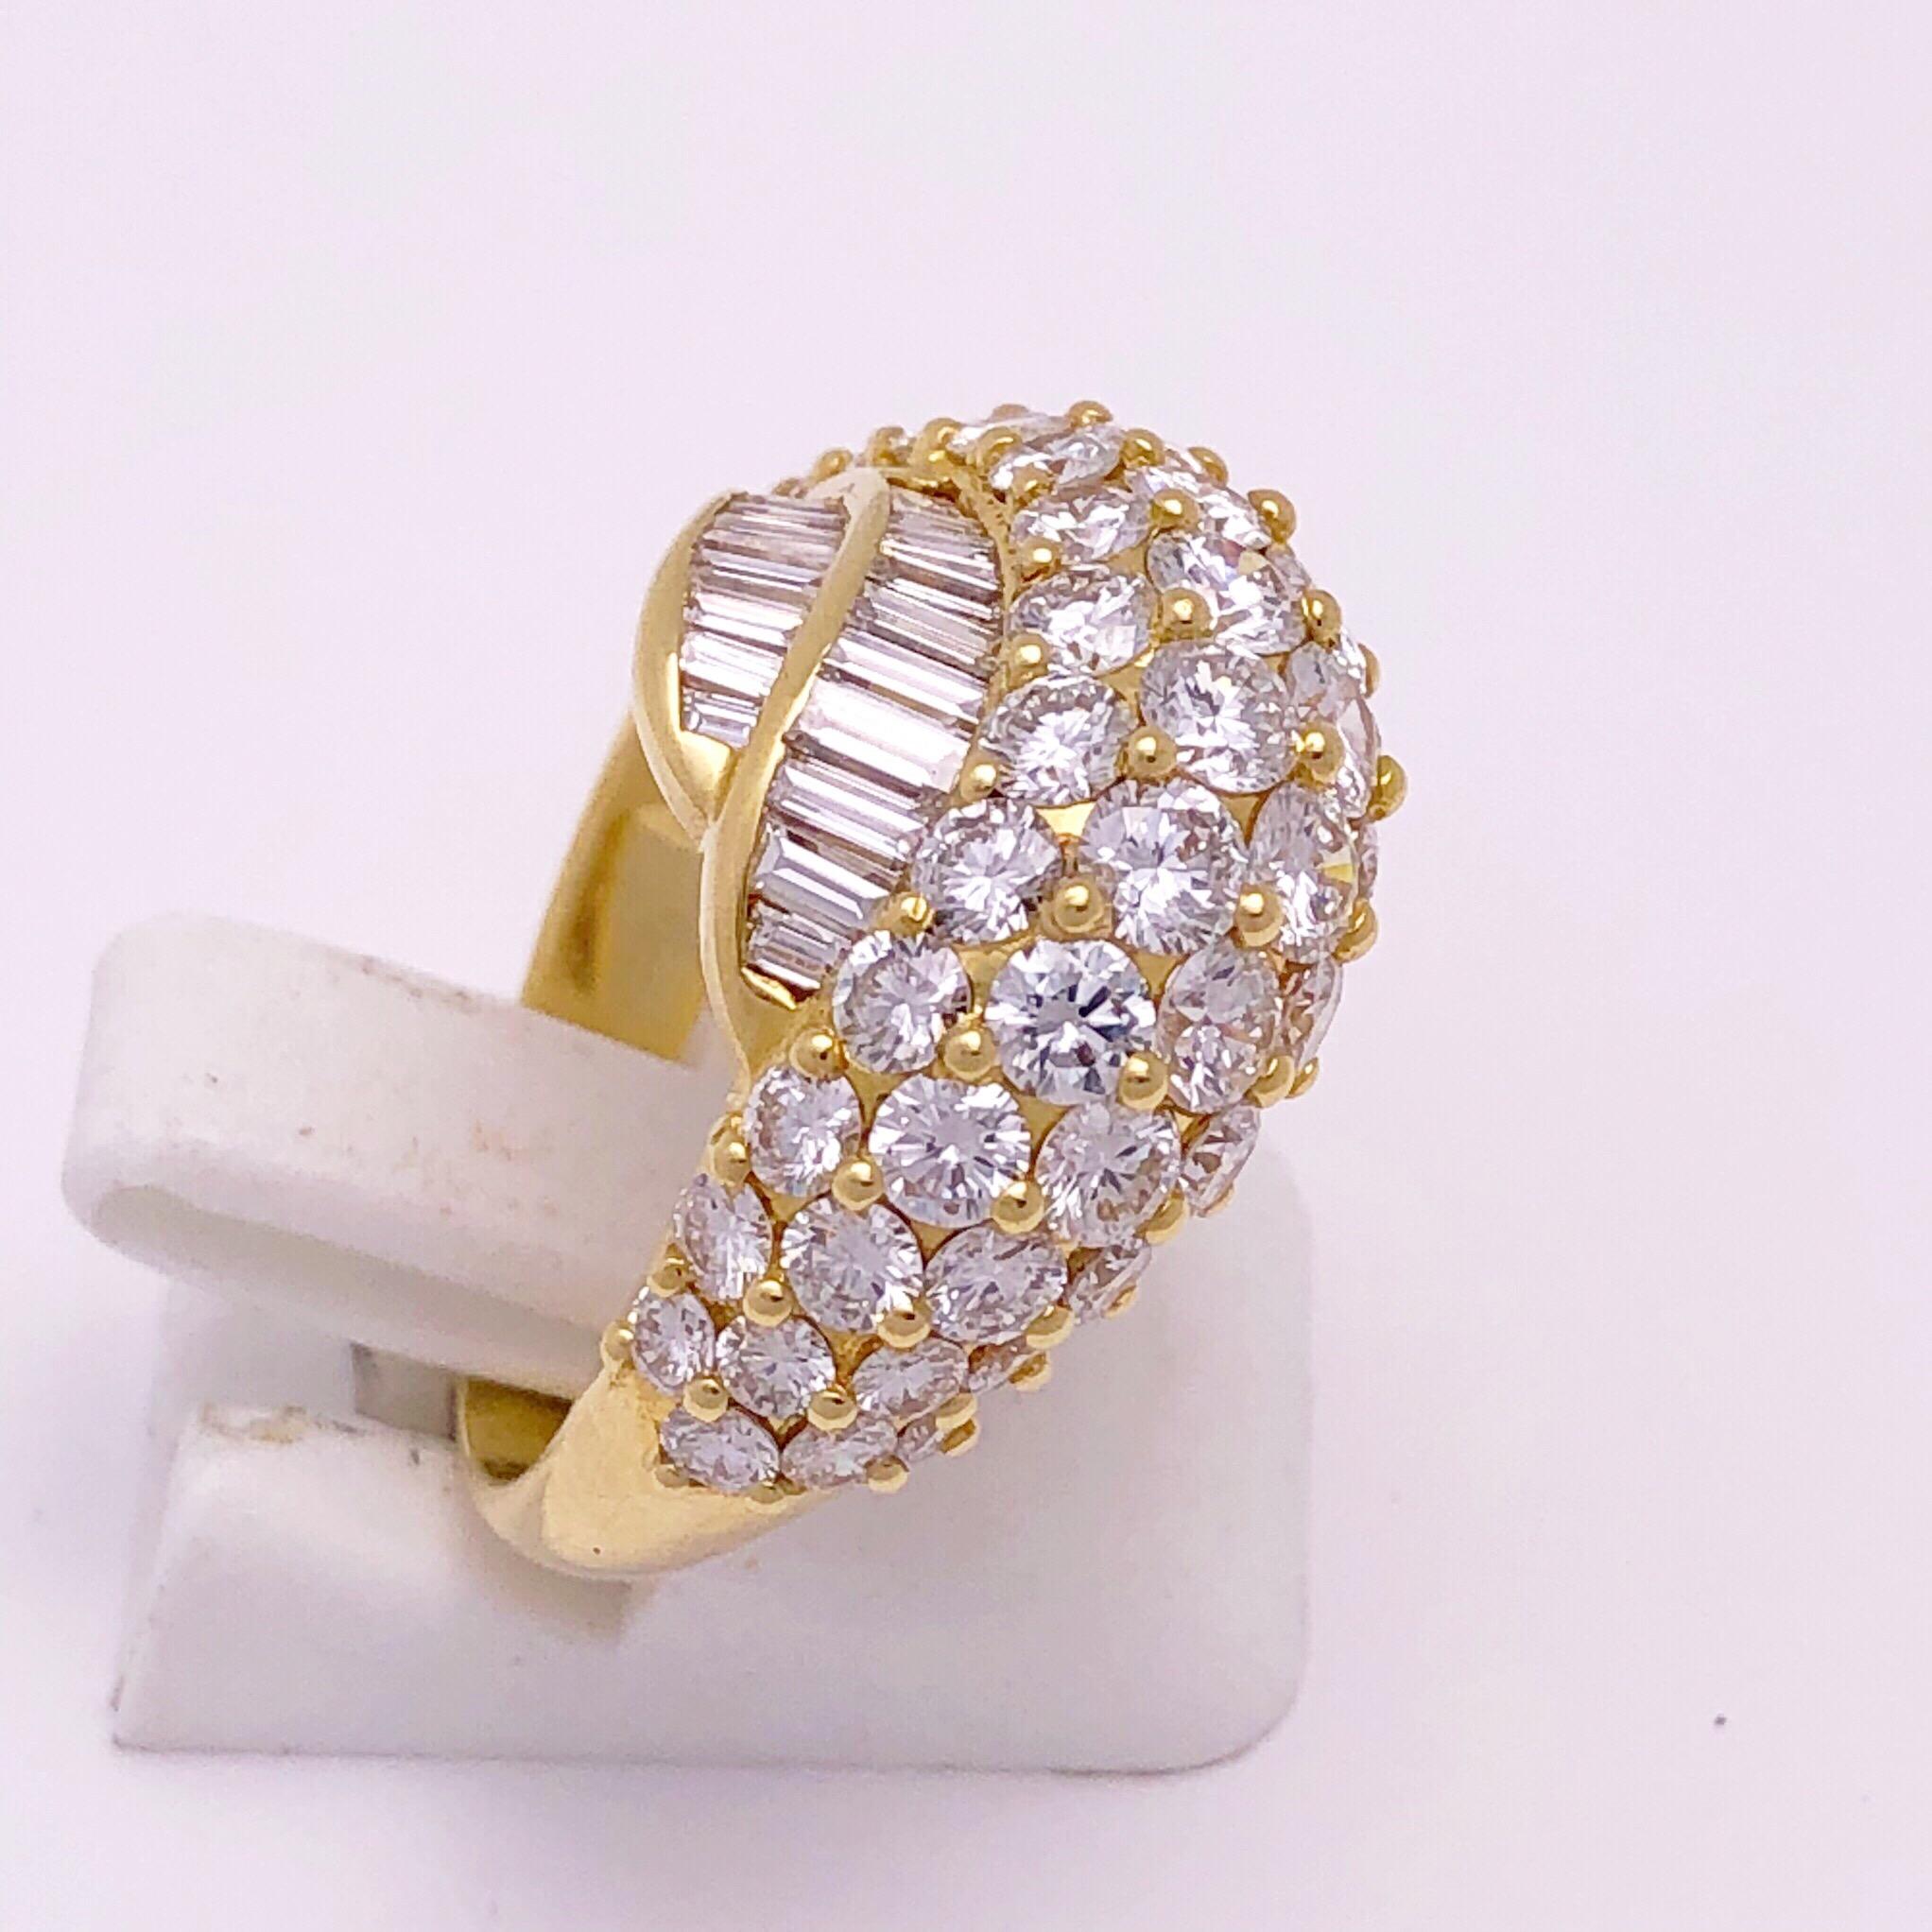 Dieser wunderschöne Diamantring aus 18-karätigem Gelbgold wurde von dem renommierten italienischen Designer Picchiotti handgefertigt.
Dieser Ring ist mit vier Reihen runder Diamanten im Brillantschliff mit einem Gewicht von 3,25 Karat und zwei